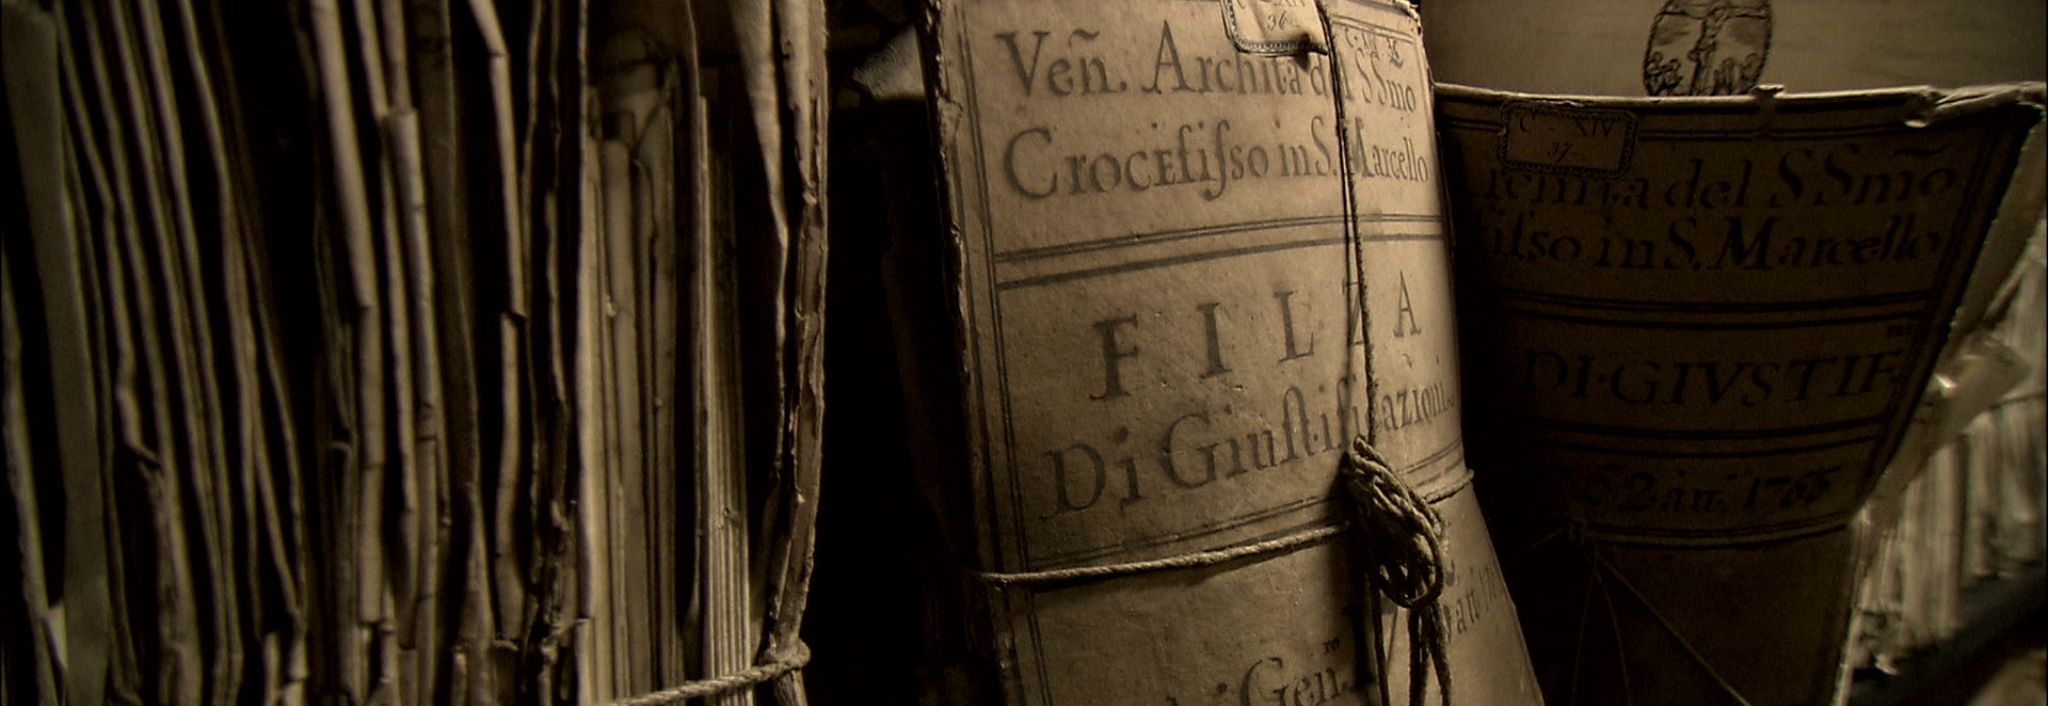 Vatikánsky tajný archív